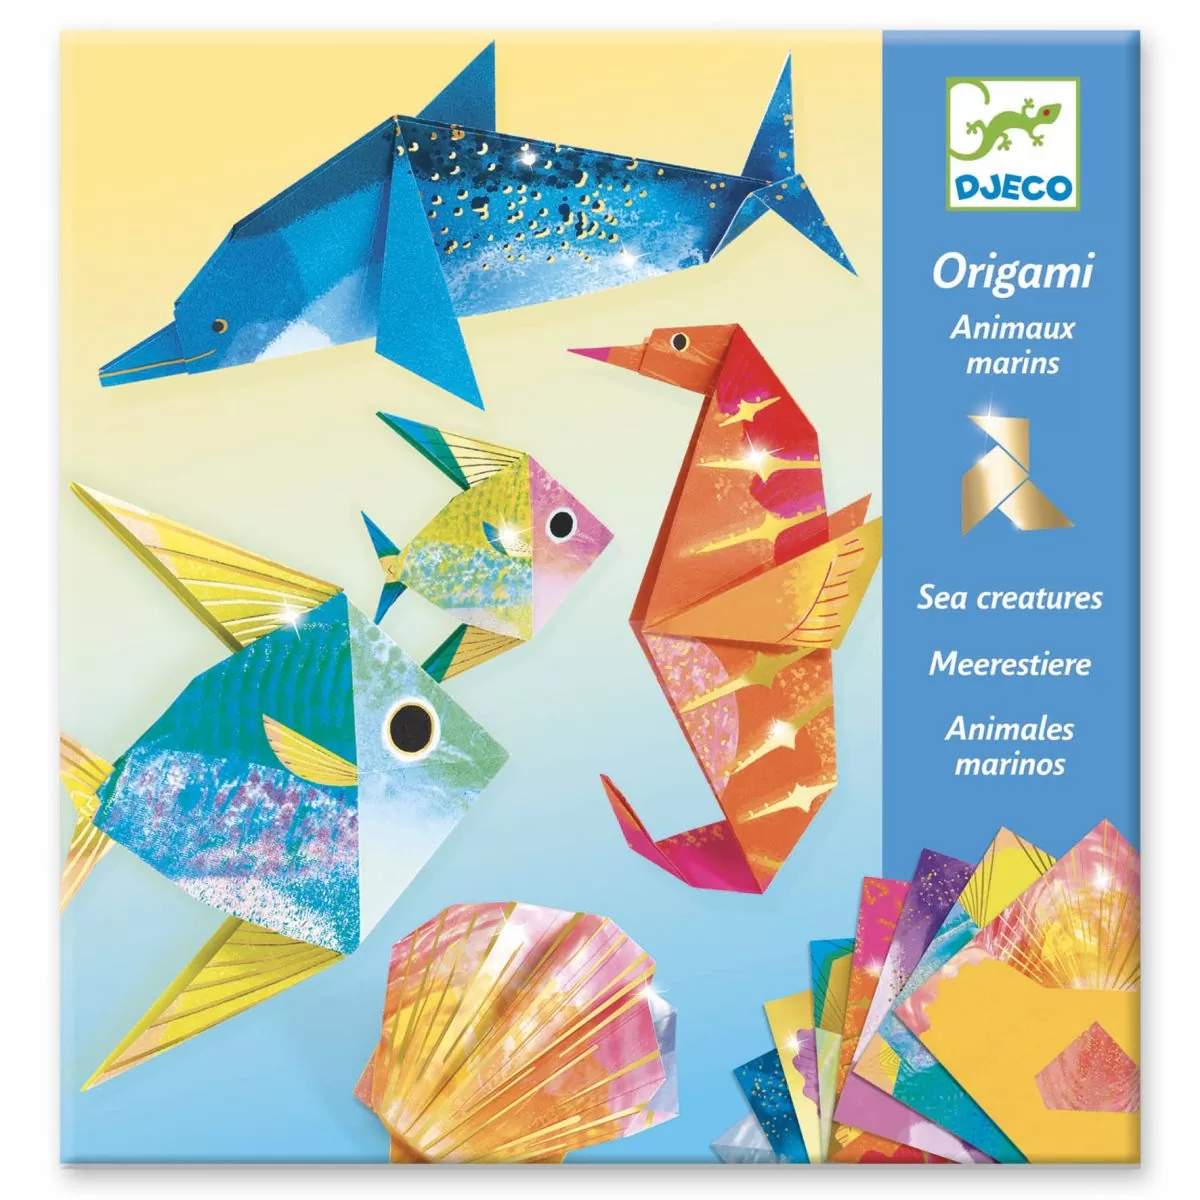 Набор для оригами Djeco. Джеко оригами динозавры. Набор для оригами Djeco «оригами» с неоновым эффектом. Оригами морские обитатели.